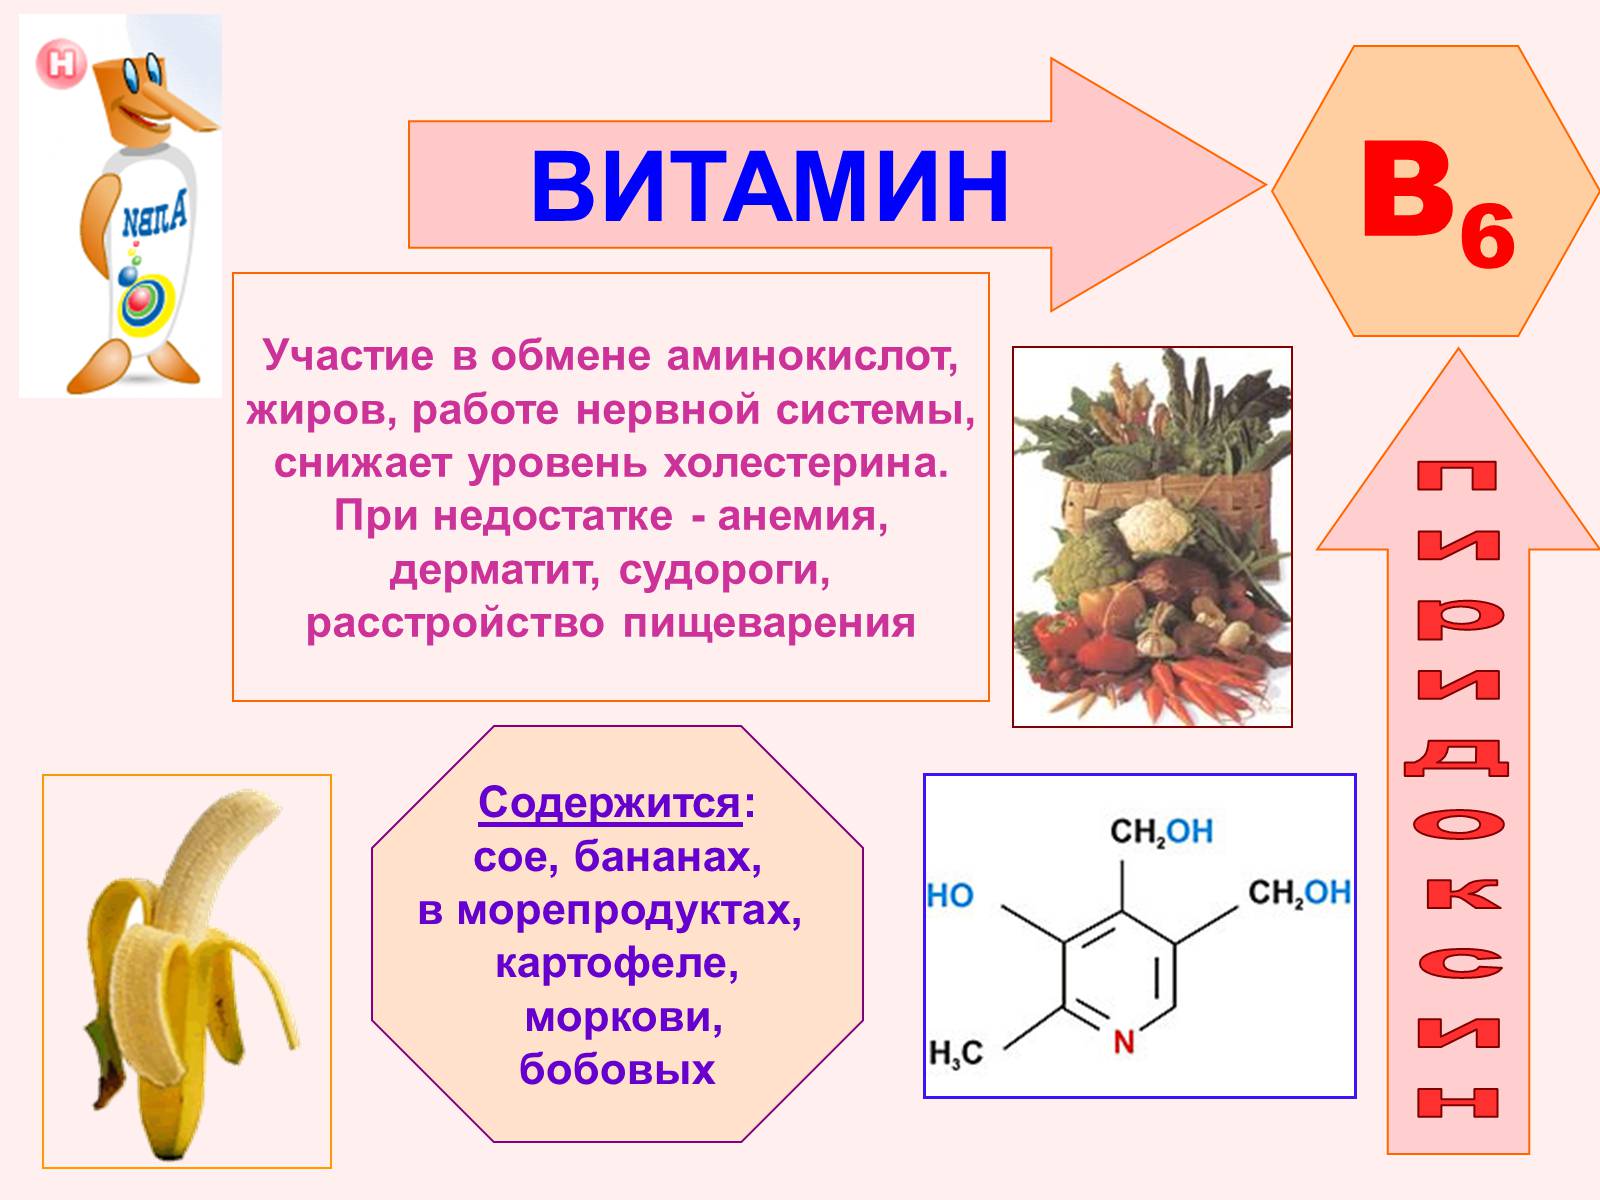 Витамин в1 польза. Роль витамина б6. Название болезни витамина b6. Витамин b6 строение. Витамин в6 физиологическое название.